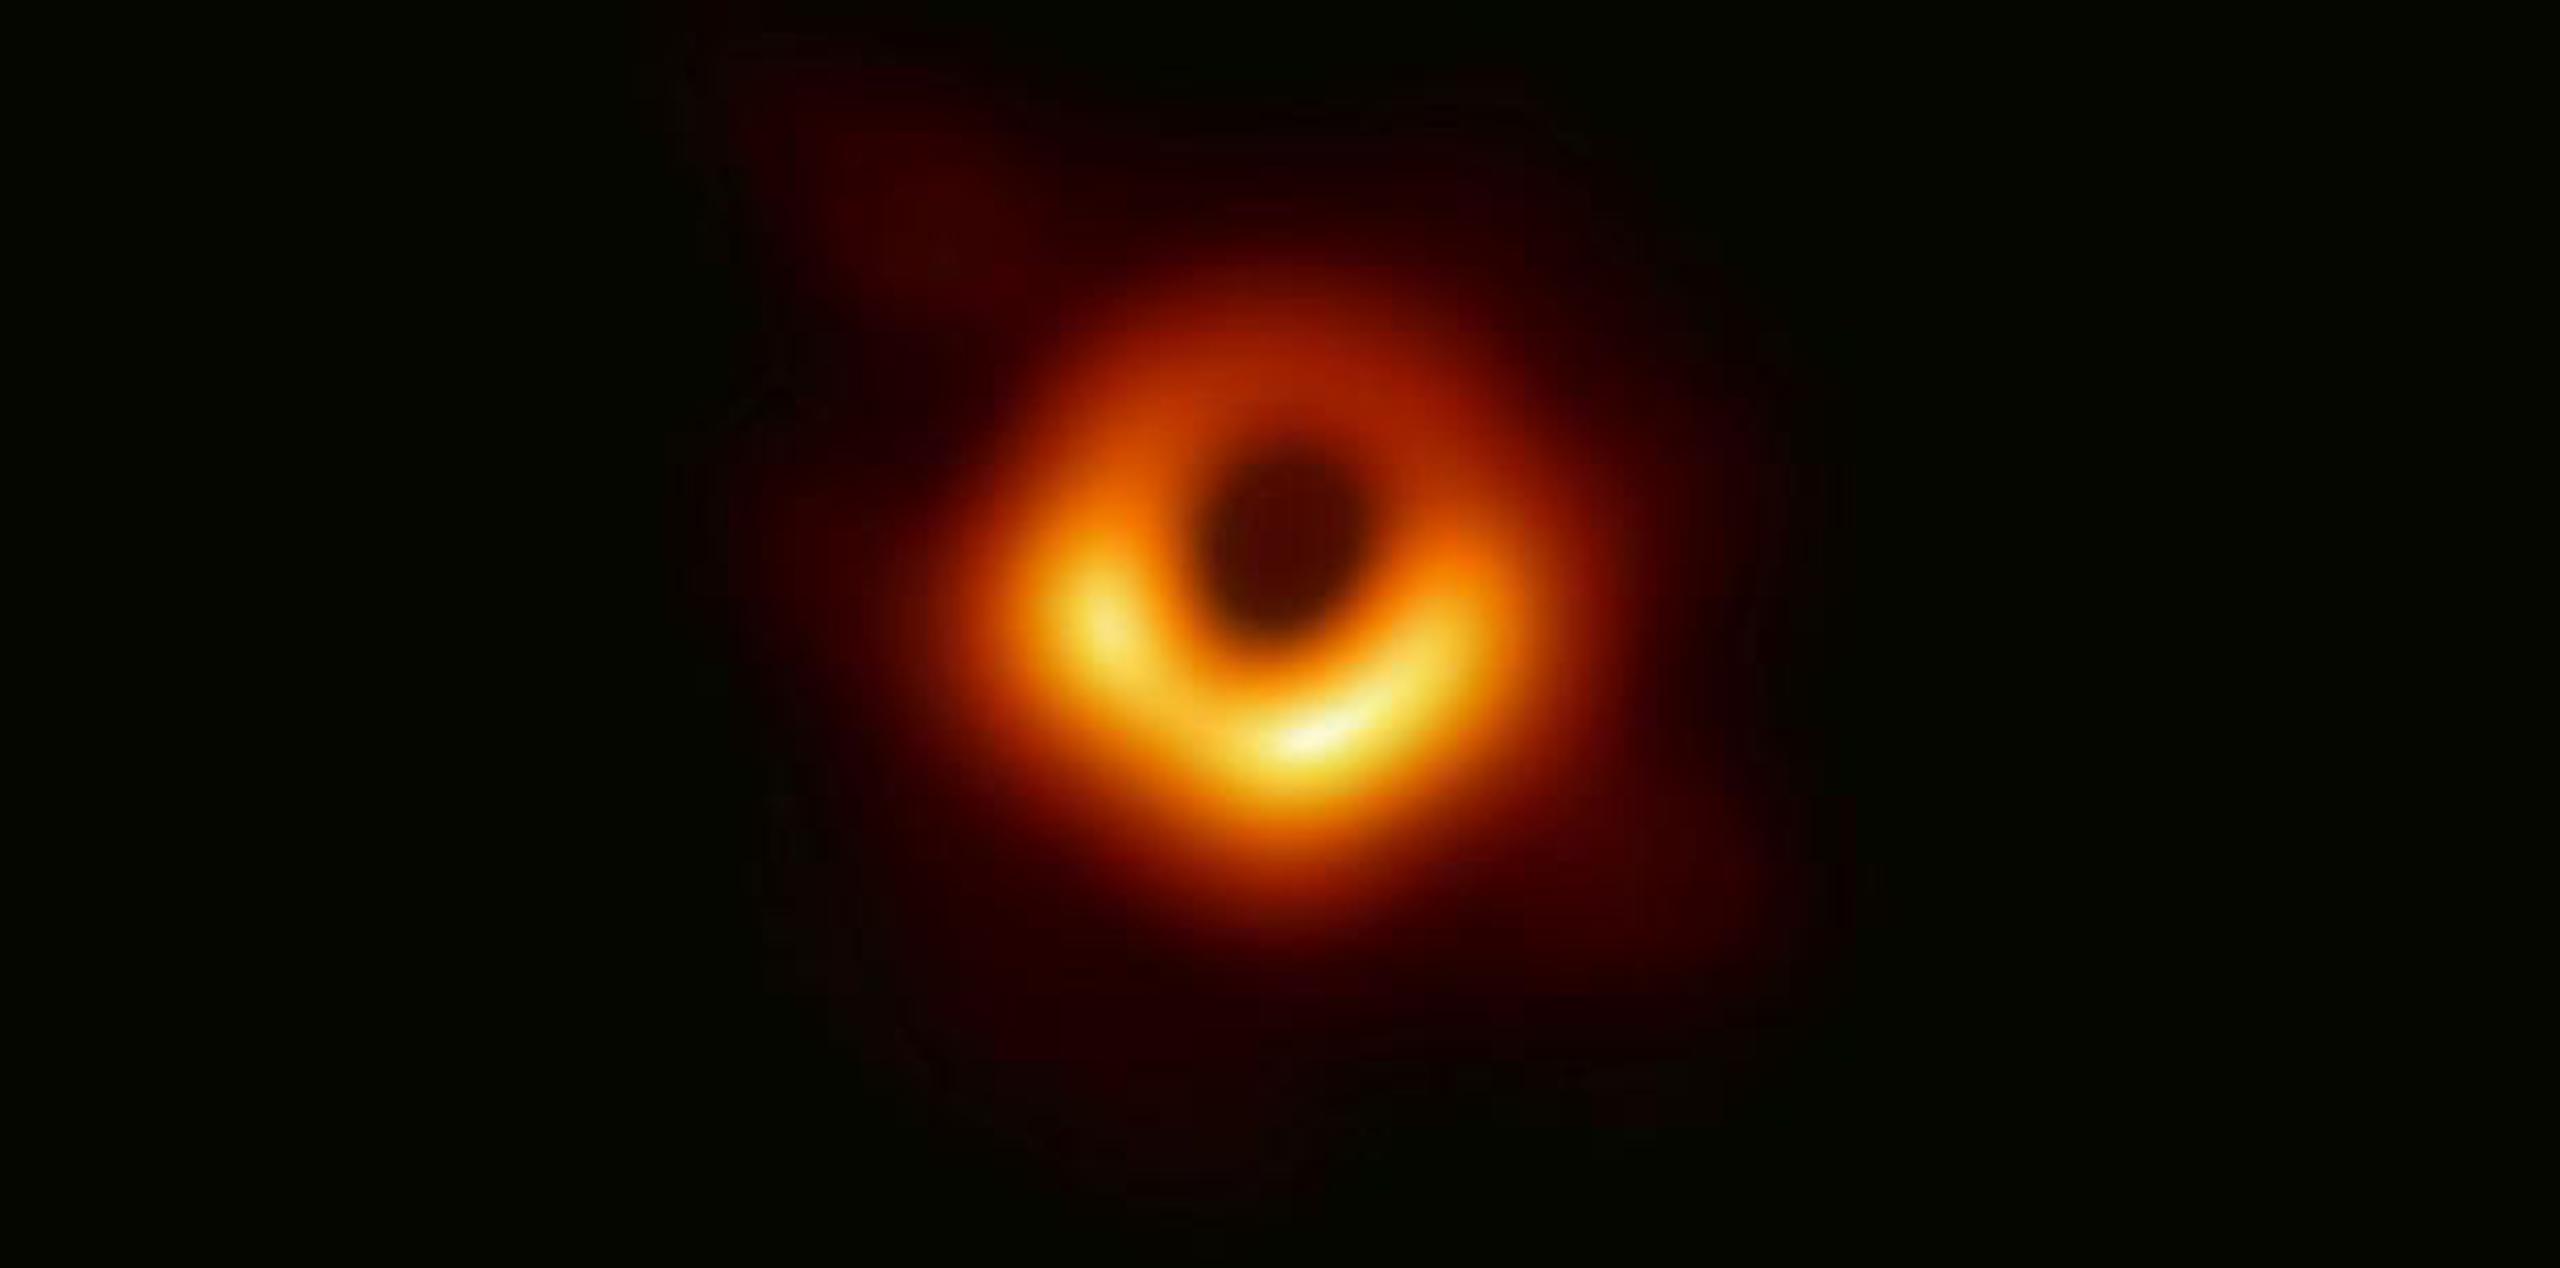 La imagen de lo que los científicos califican como un “absoluto monstruo” corresponde al agujero negro supermasivo ubicado en el centro de la galaxia M87, a 53.3 millones de años luz de la Tierra. (AP)